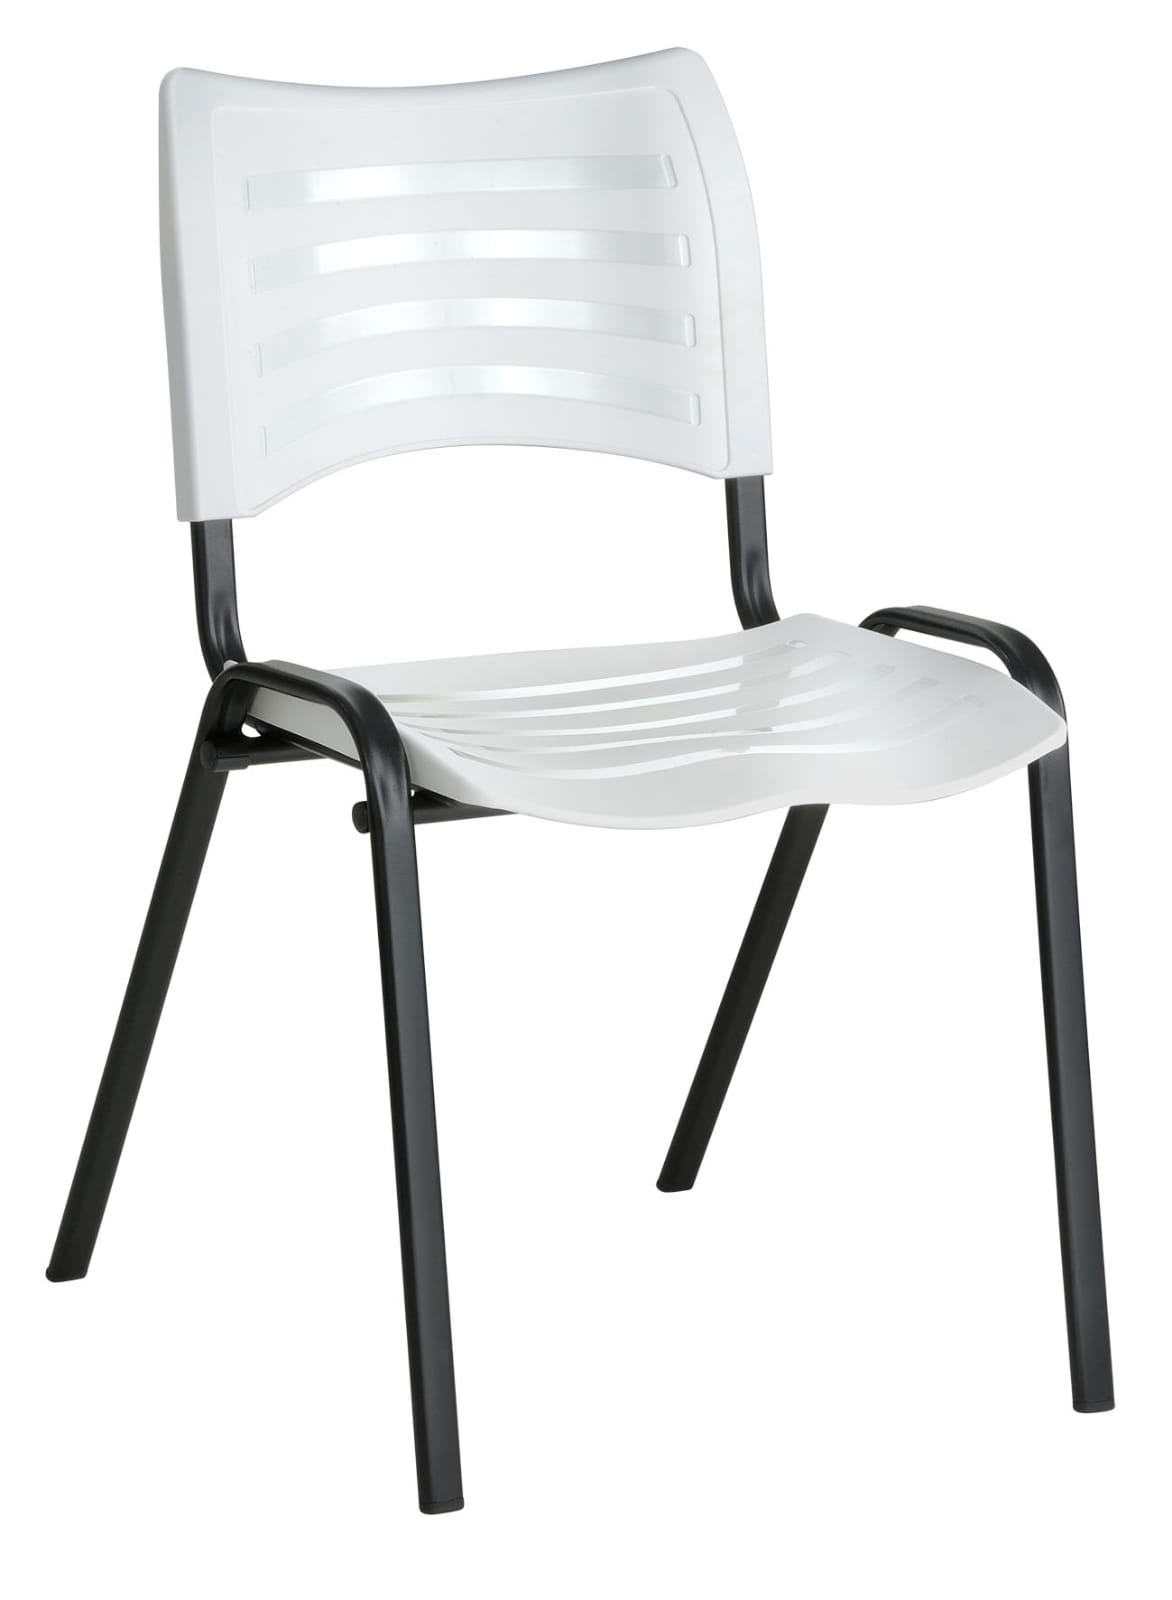  Cadeira para Refeitório Isoflex Empilhável - Diversas Cores